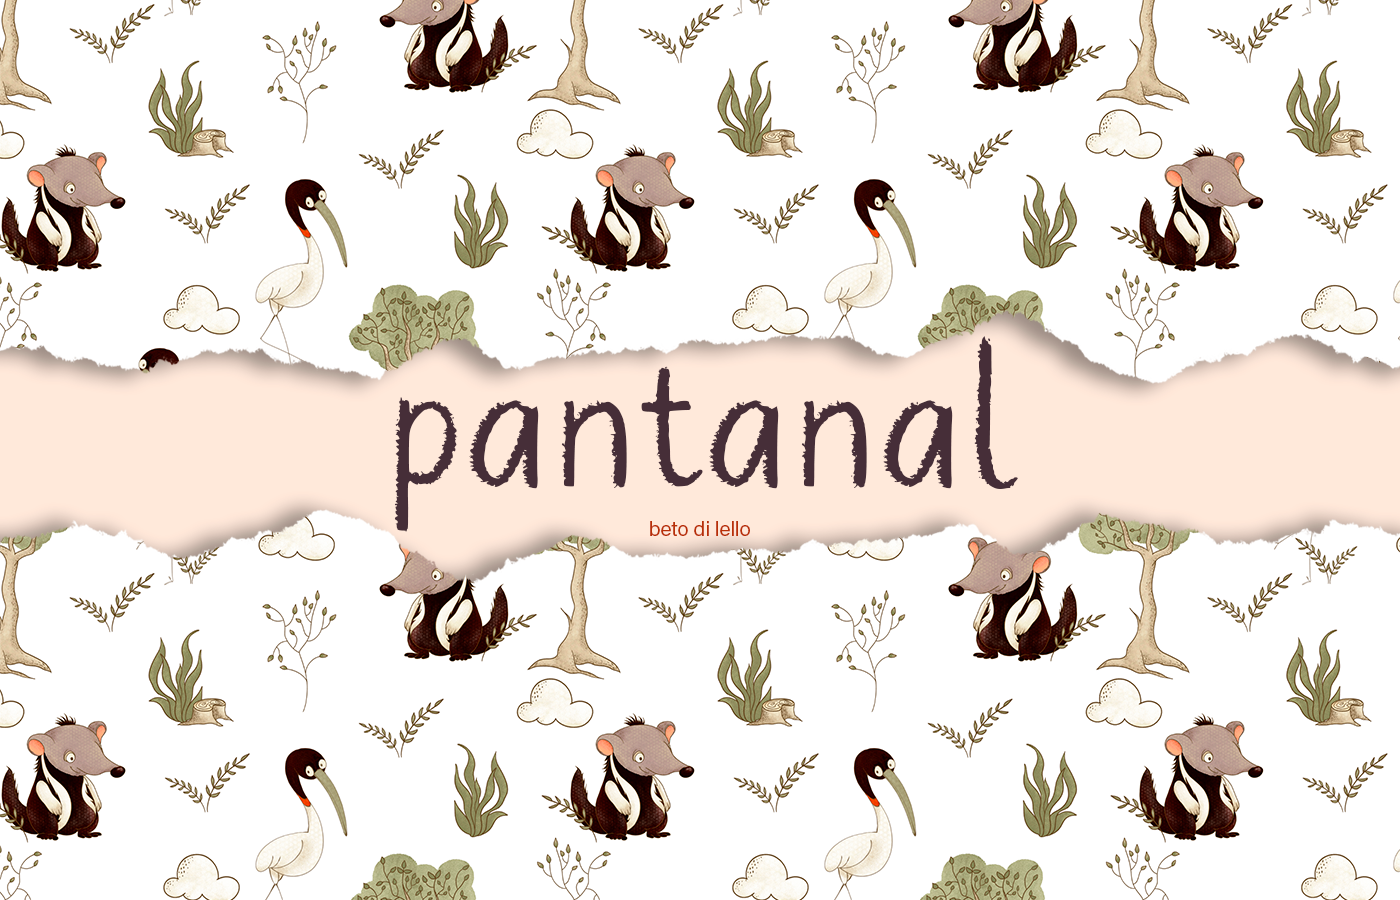 wetlands pantanal anteater surface design pattern seamless textile fauna Digital Art  tuiuiú